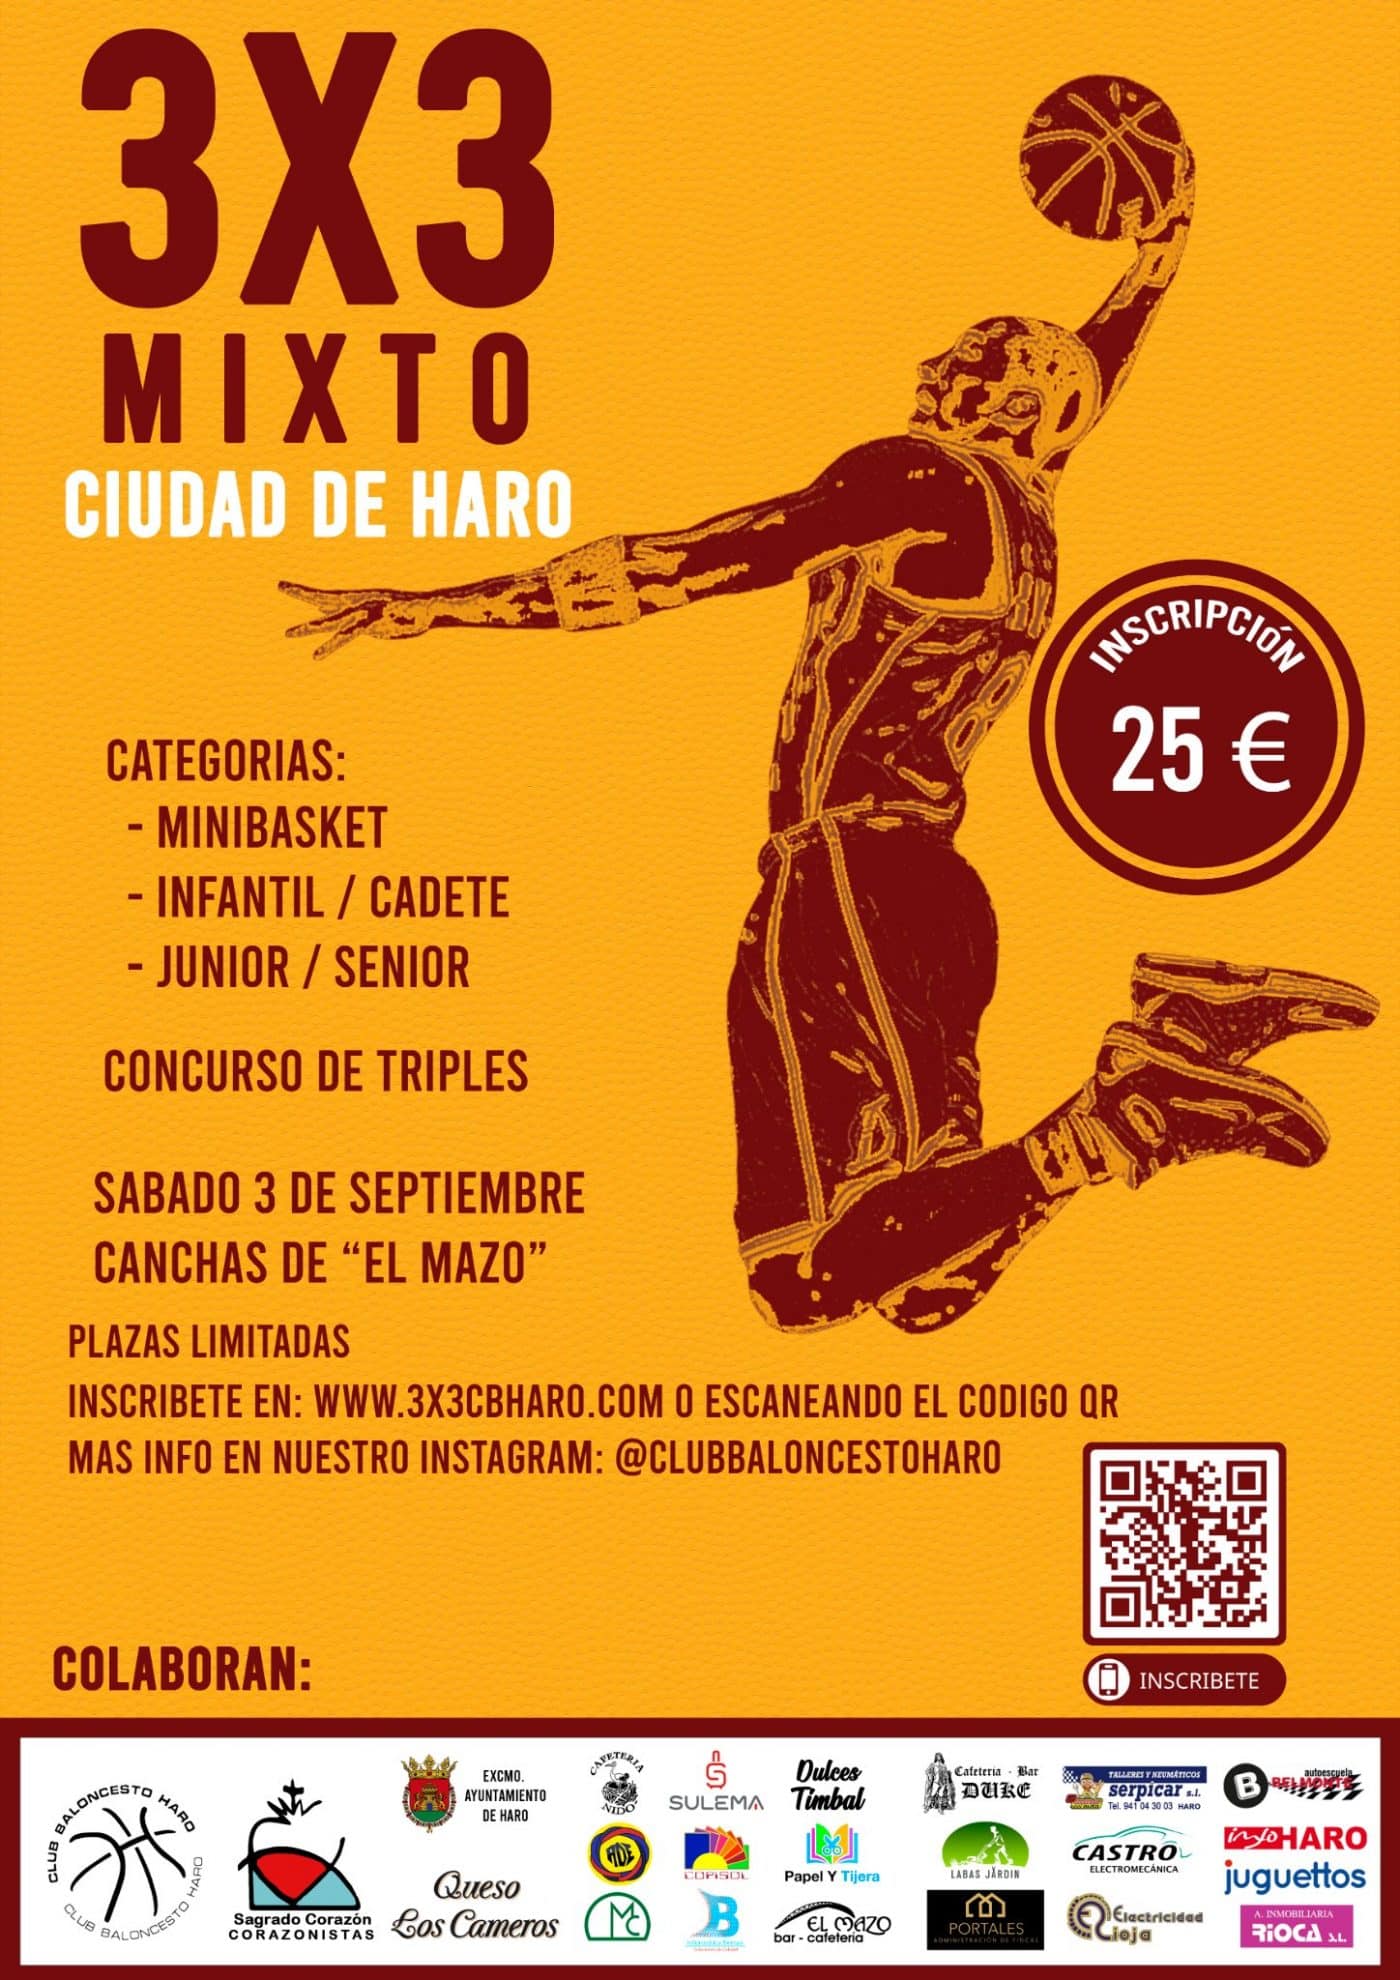 El Club Baloncesto Haro organiza un torneo 3x3 mixto 1